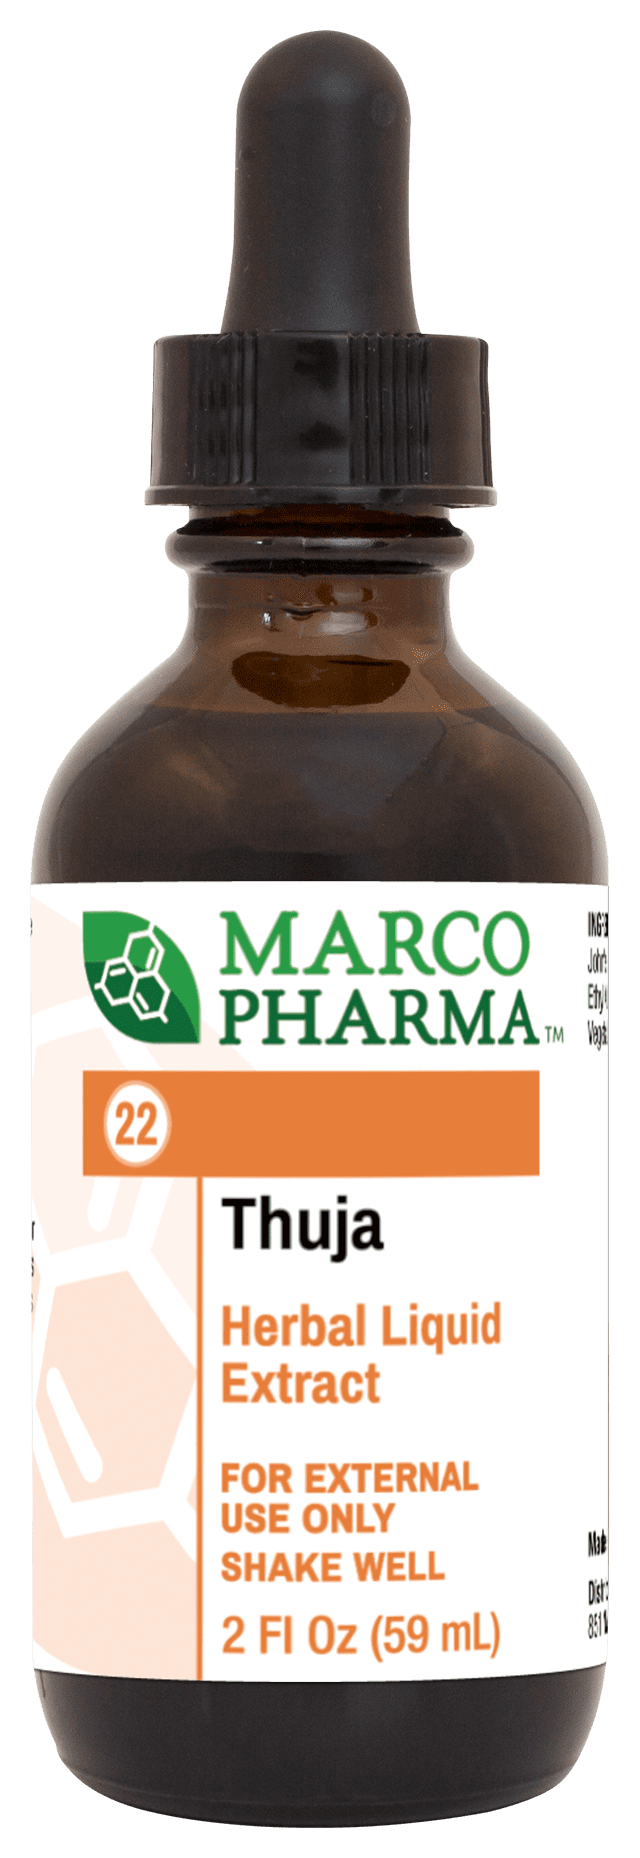 Thuja Herbal Liquid